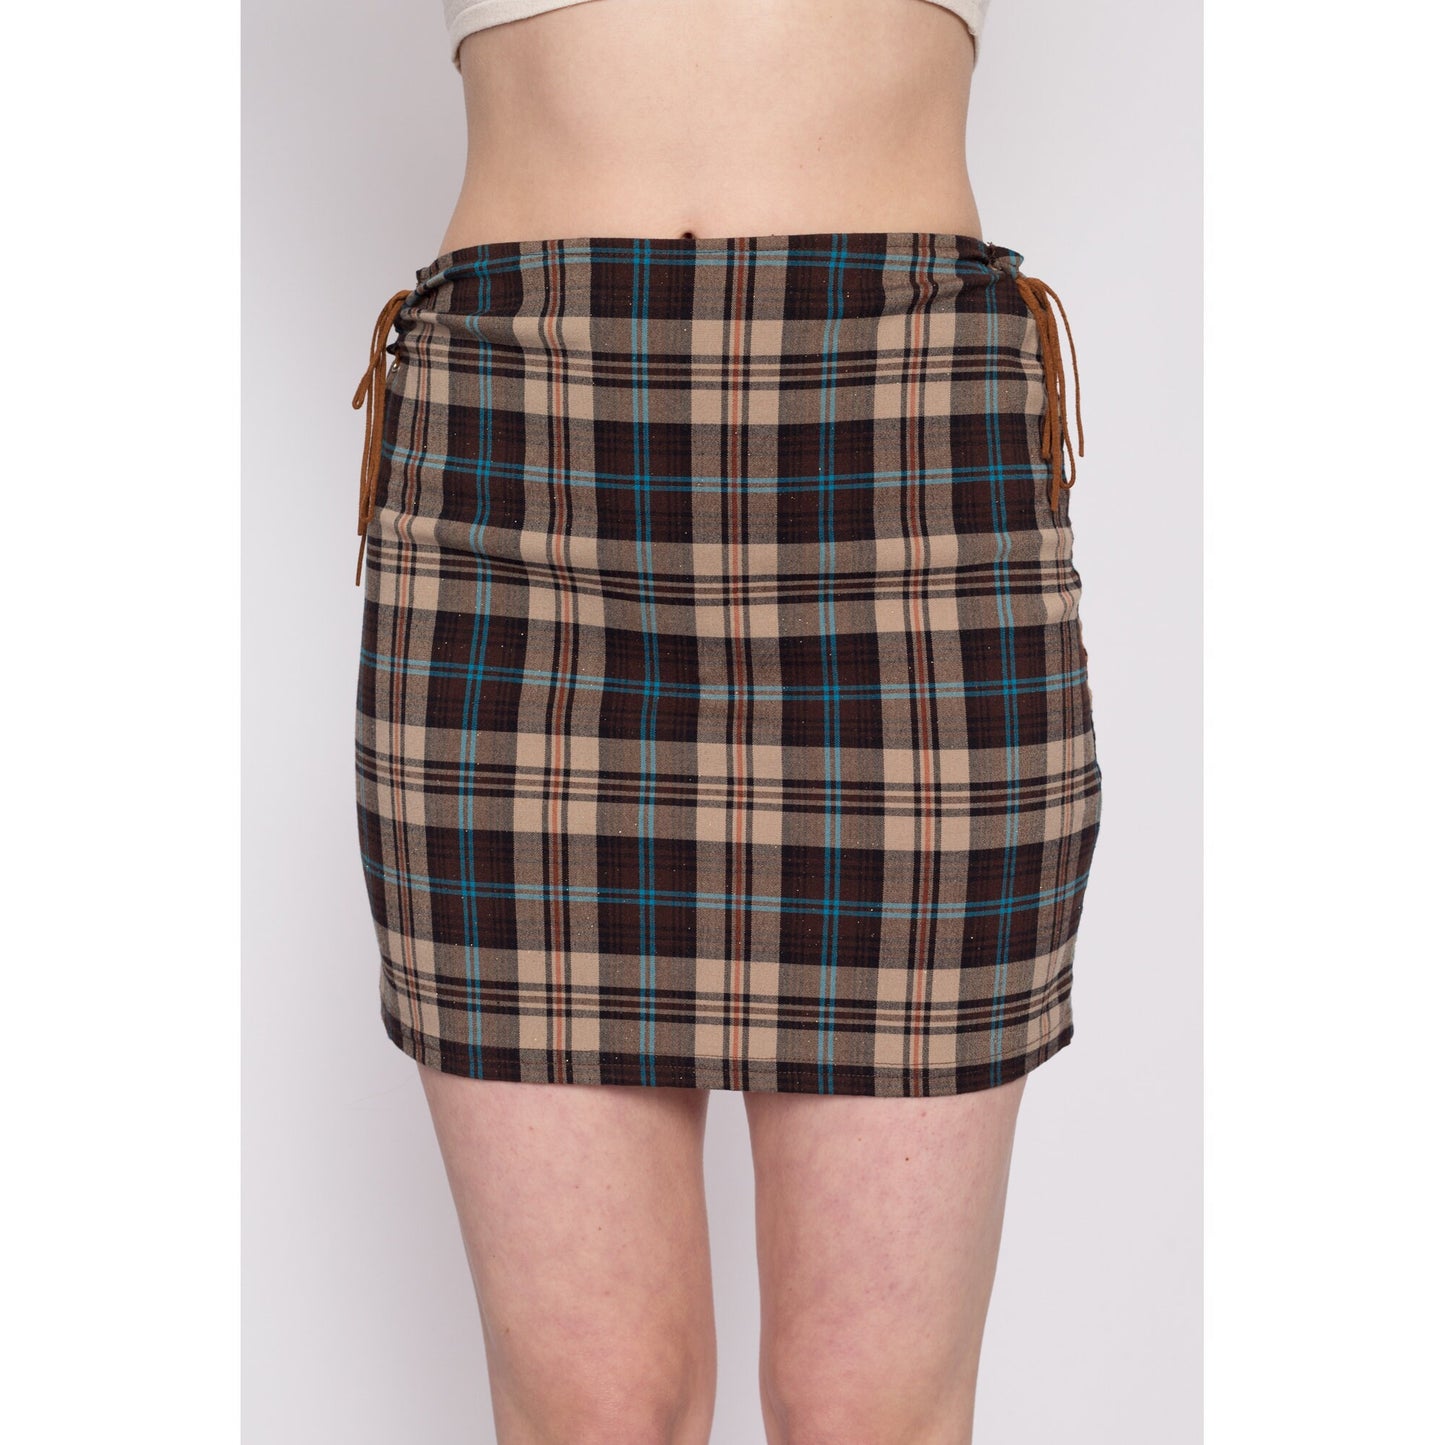 Y2K Plaid Lace-Up Mini Pencil Skirt - Medium | Vintage High Waisted Fitted Schoolgirl Miniskirt